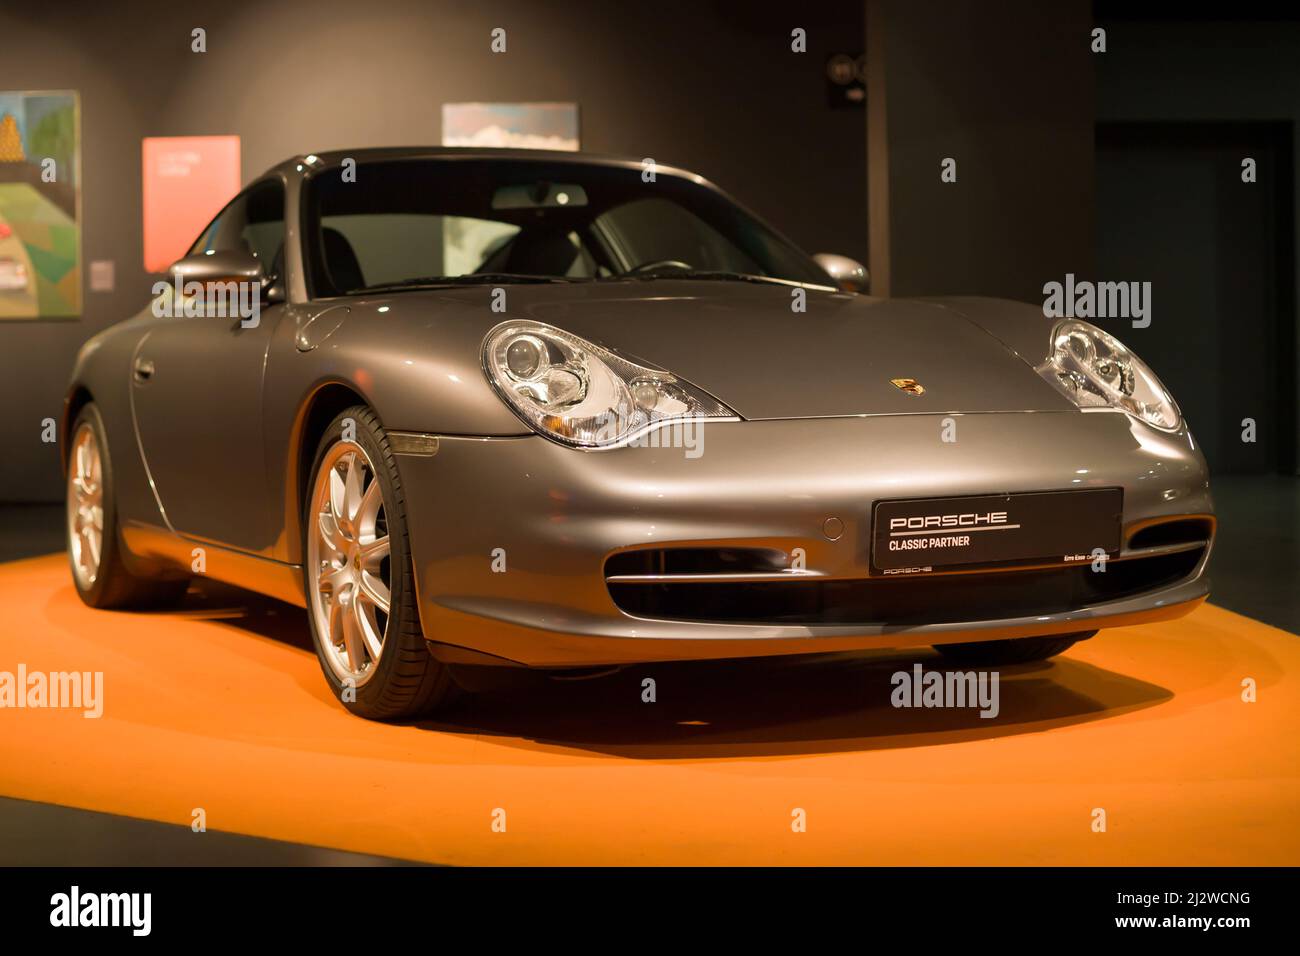 Turin, Italie - 14 août 2021 : 2003 Porsche 911 GT3 présentée au Musée national de l'automobile (MAUTO) à Turin, Italie. Banque D'Images